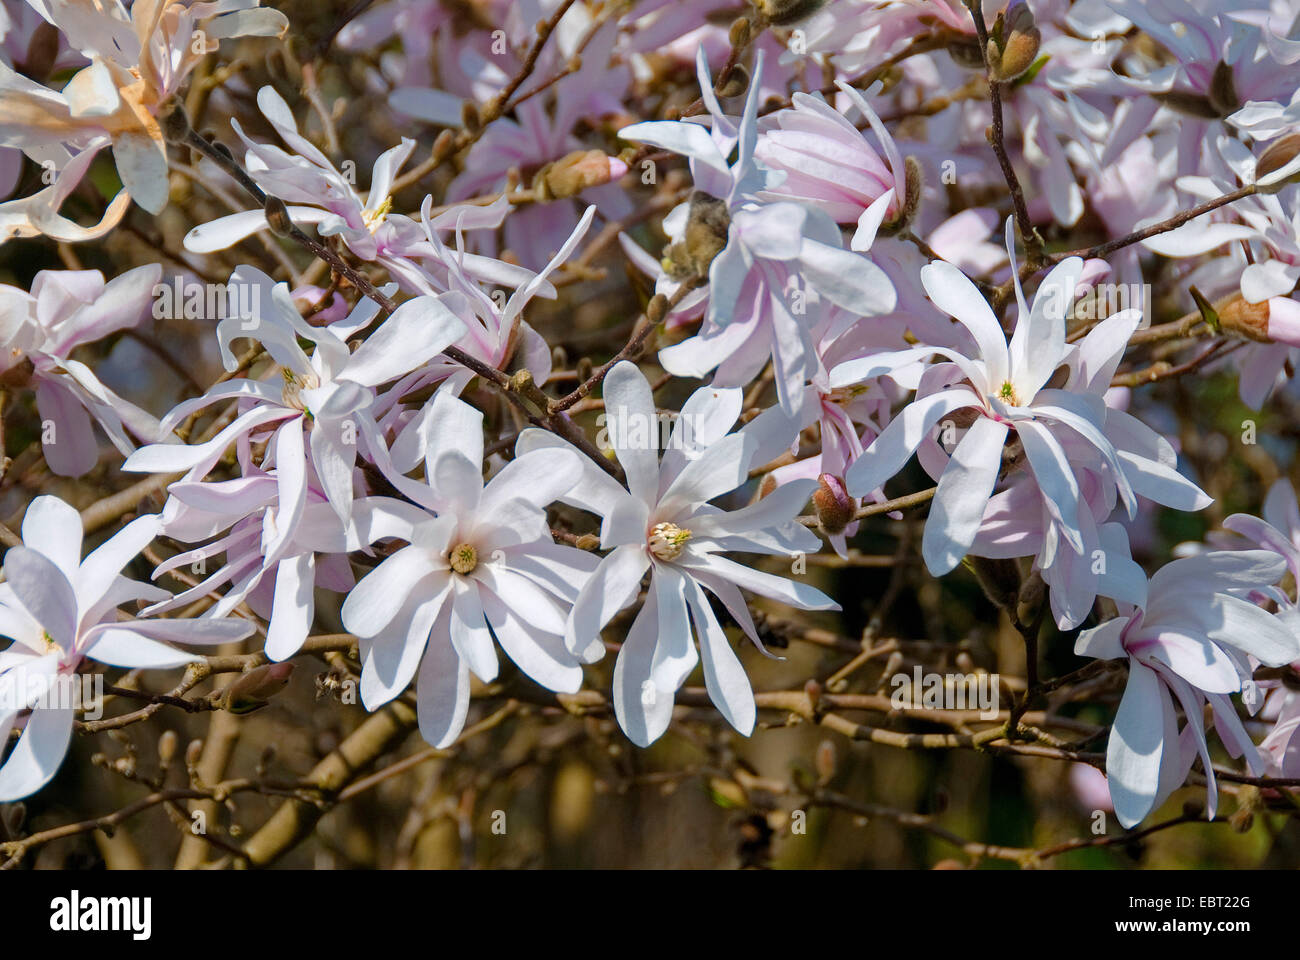 Star magnolia (Magnolia stellata 'Rosea', Magnolia stellata rosea), le cultivar rosea, blooming Banque D'Images